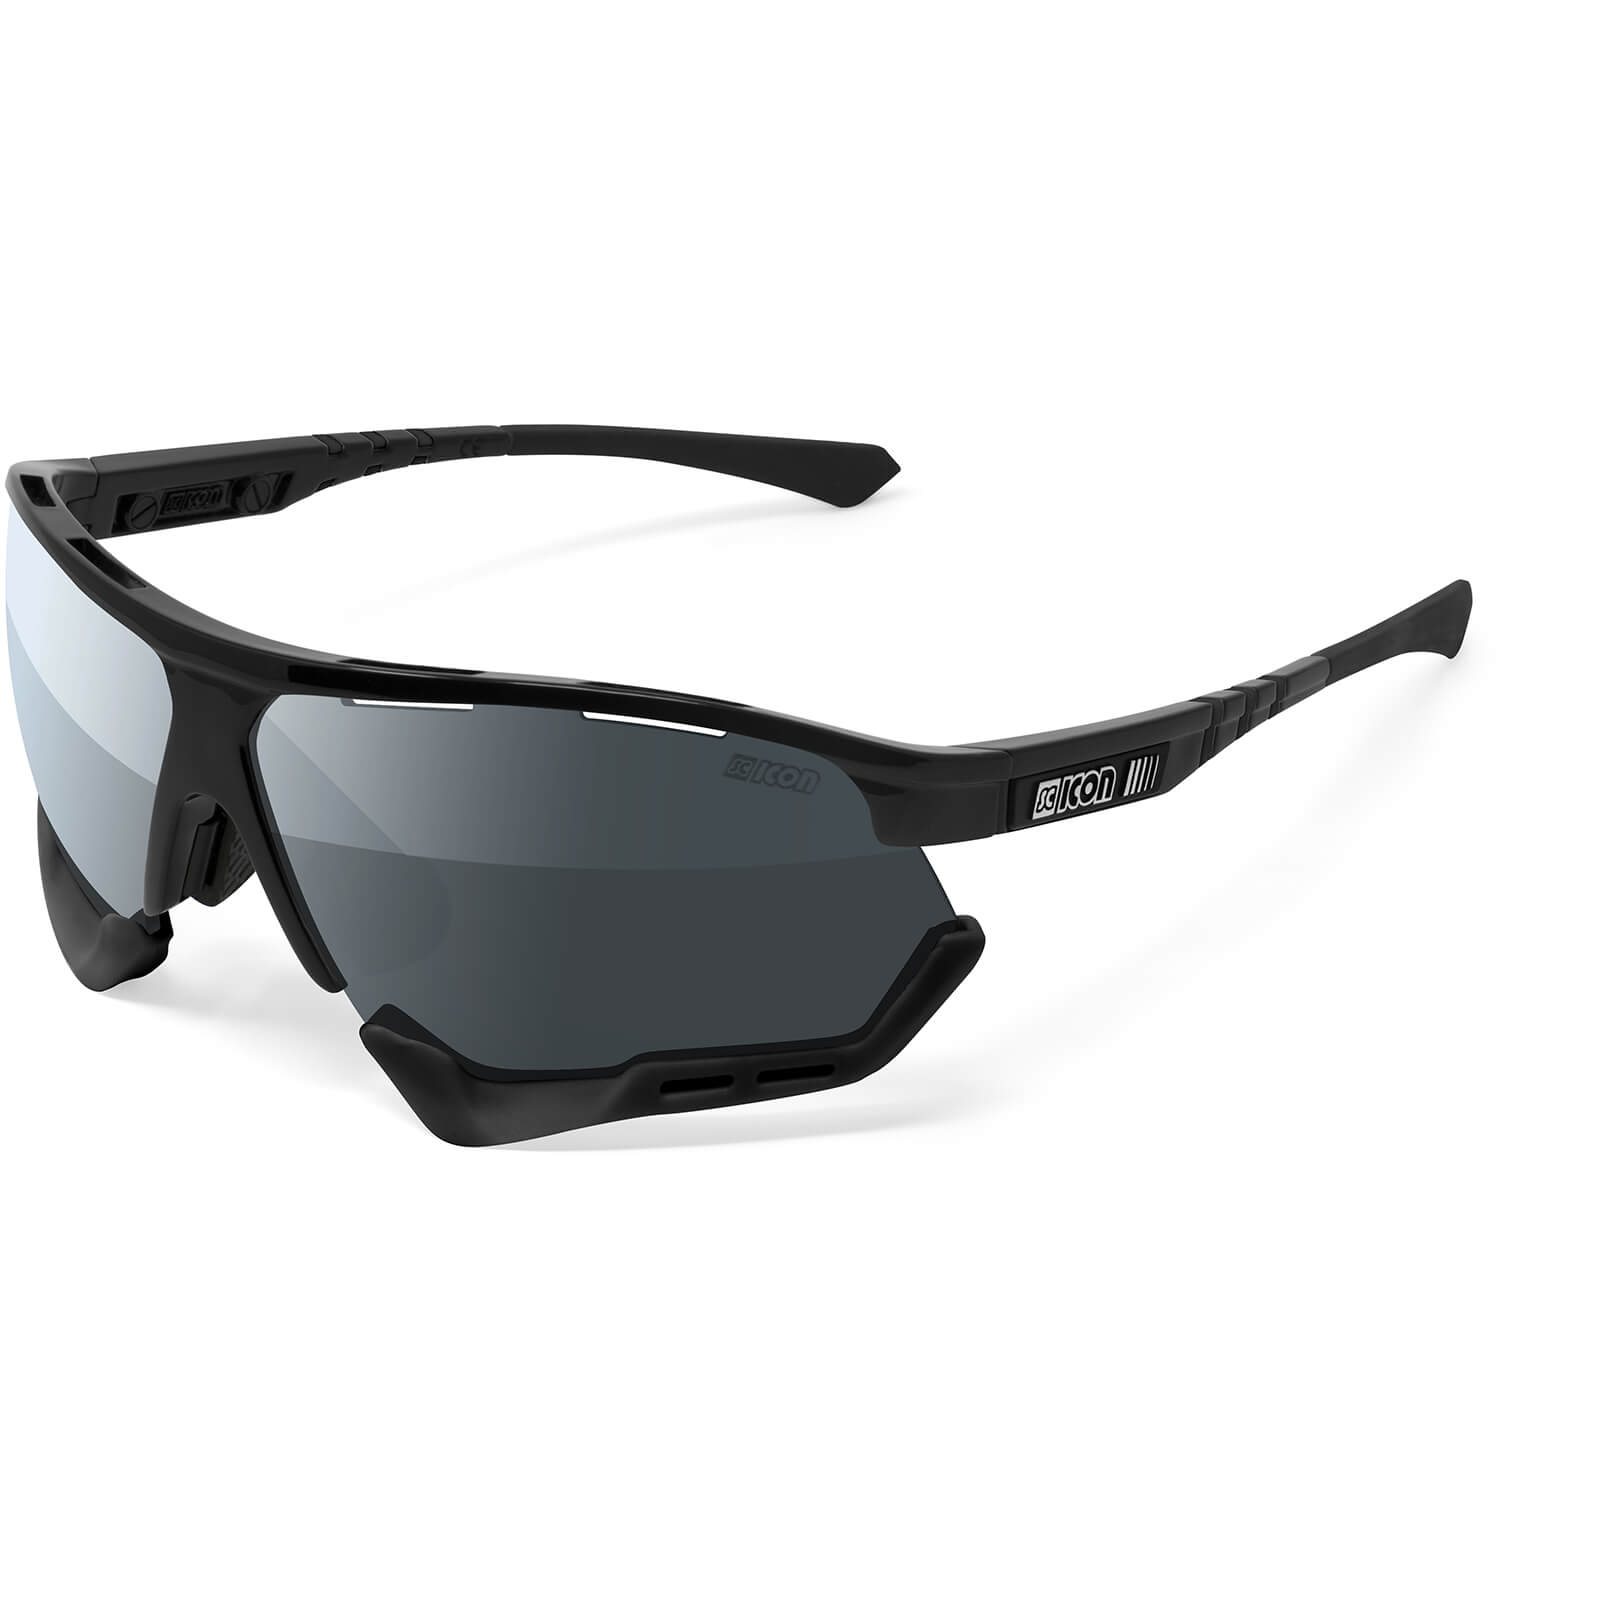 Scicon Aerocomfort XL Road Sunglasses - Black Gloss/SCNPP Multimirror Silver